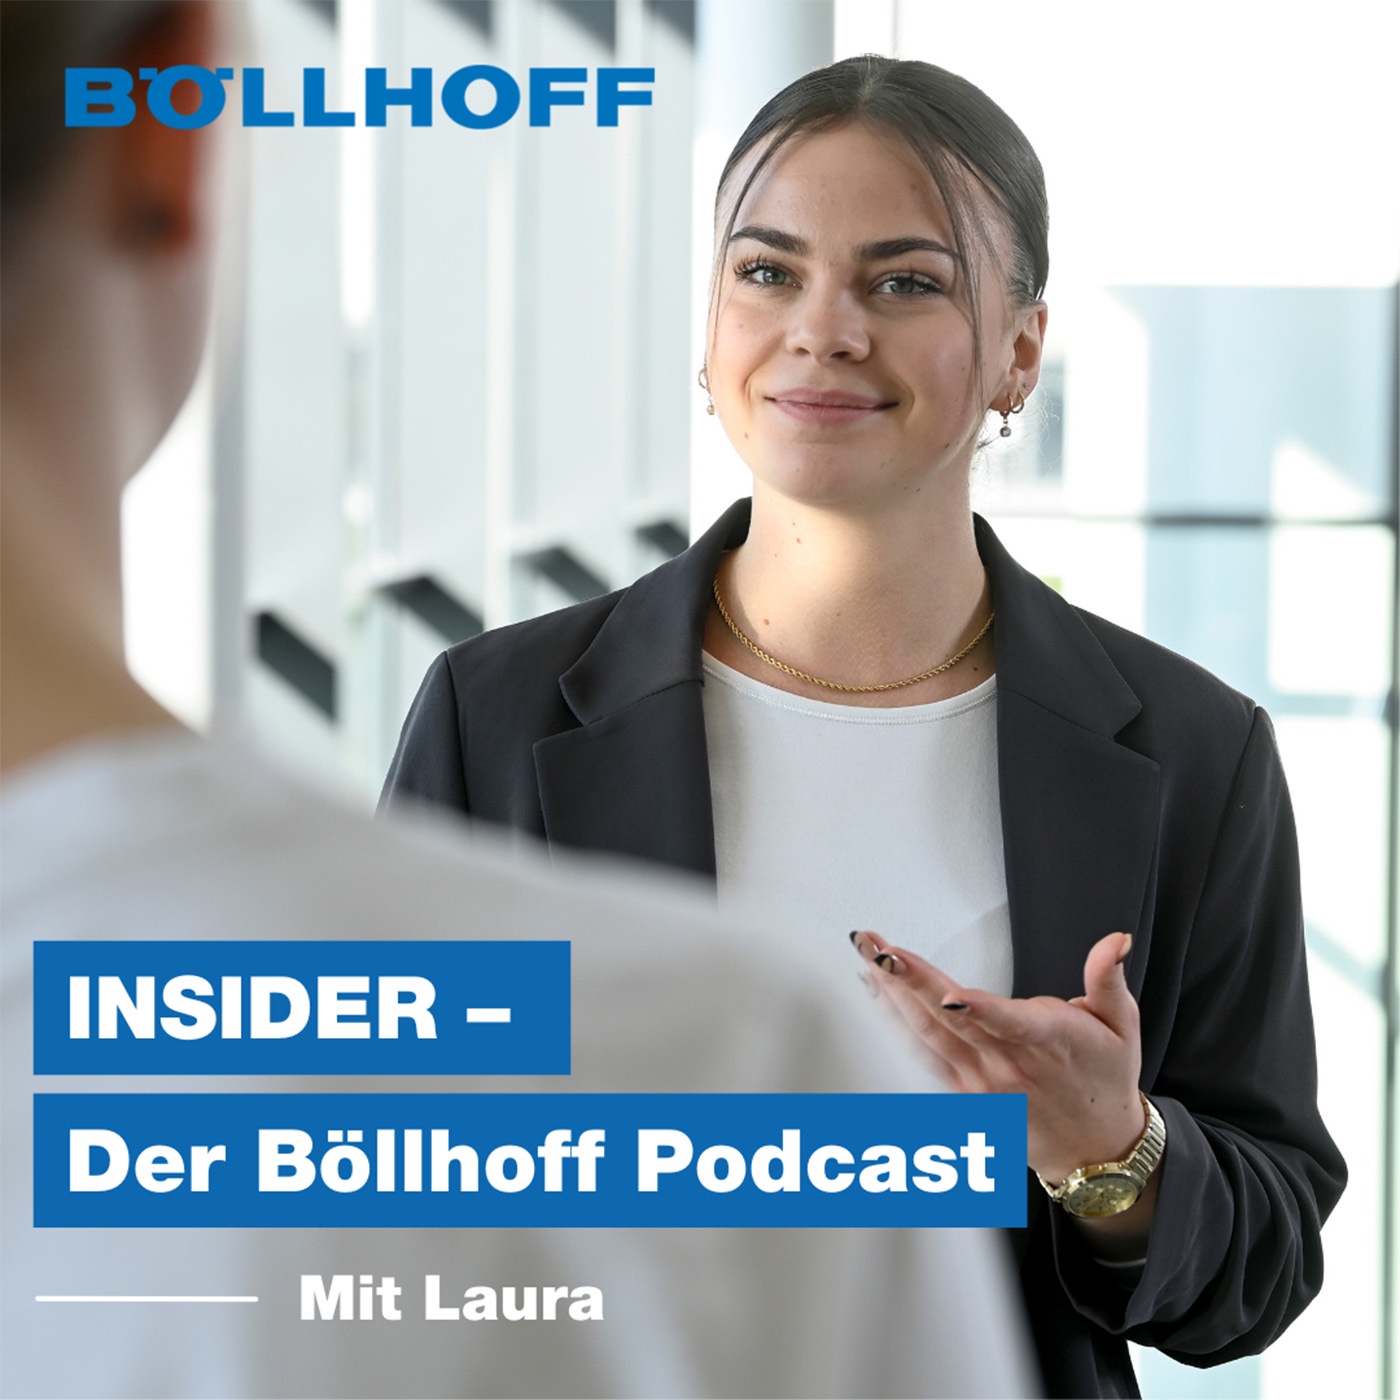 INSIDER - Der Böllhoff Podcast